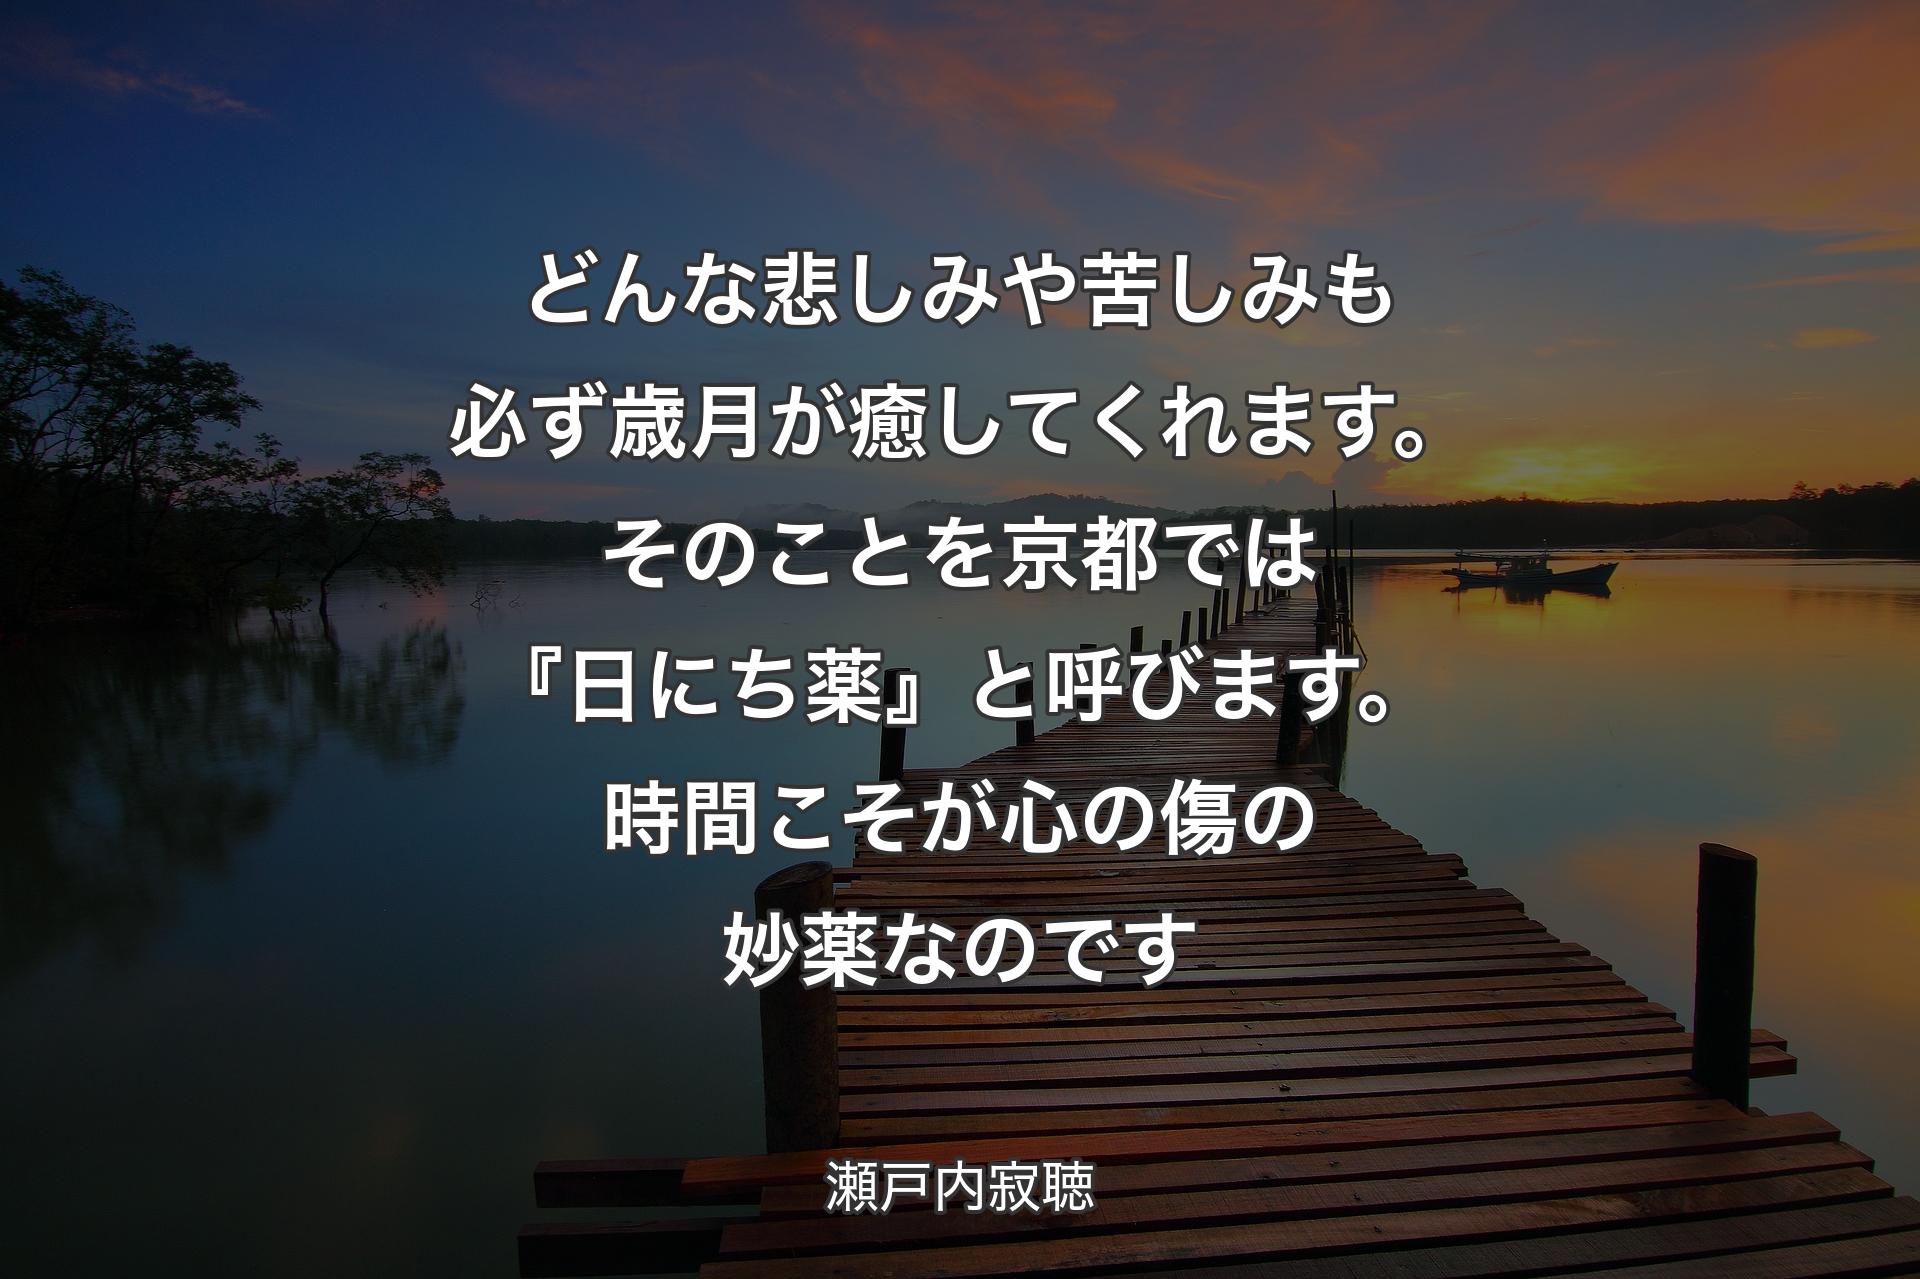 【背景3】どんな悲しみや苦しみも必ず歳月が癒してくれます。そのことを京都では『日にち薬』と呼びます。時間こそが心の傷の妙薬なのです - 瀬戸内寂聴